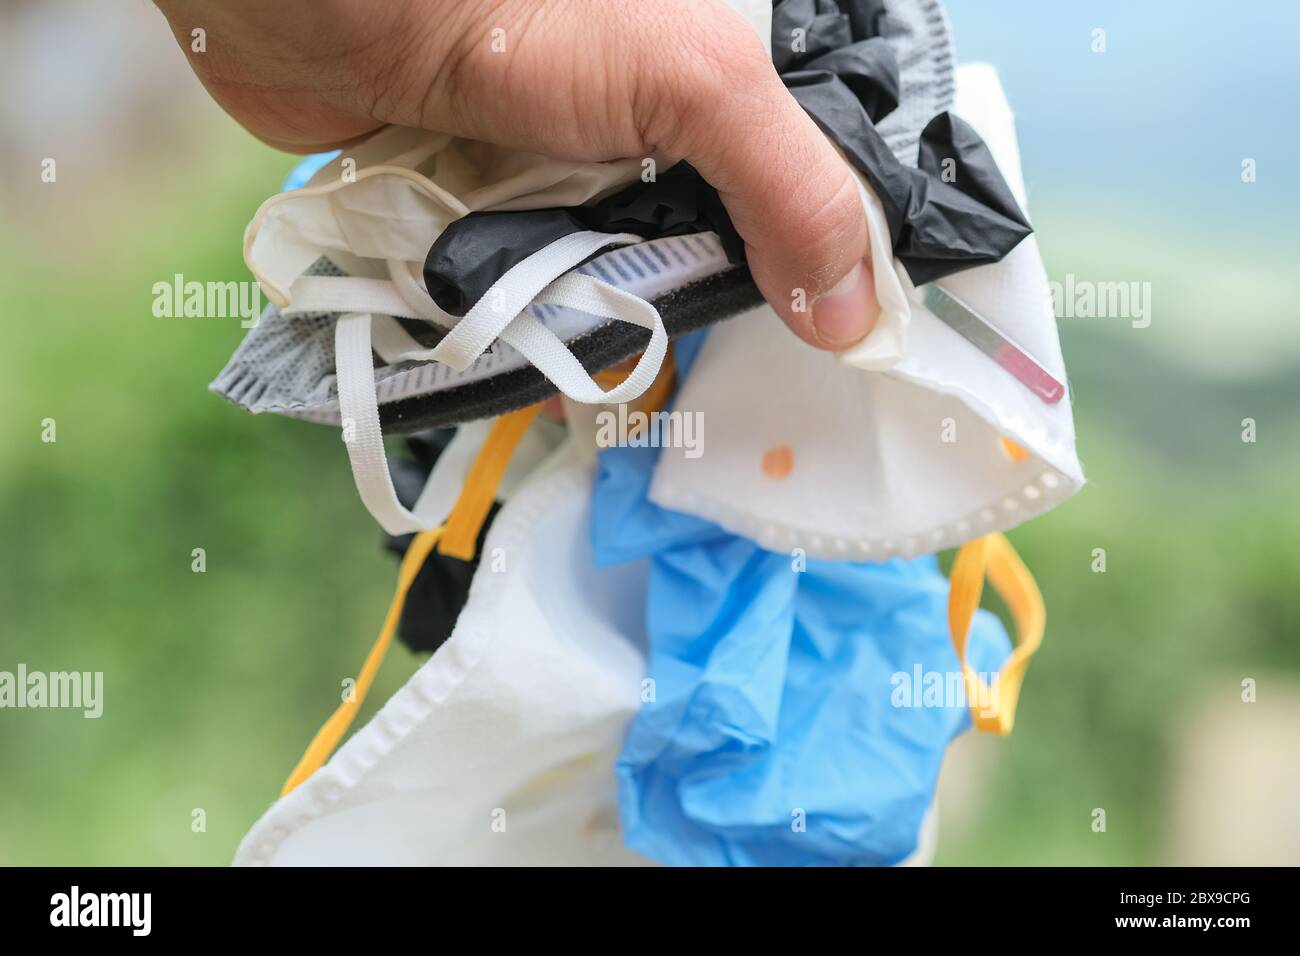 Mano humana con mascarilla médica sucia y guantes basura, equipo de enfermedad coronavirus Foto de stock